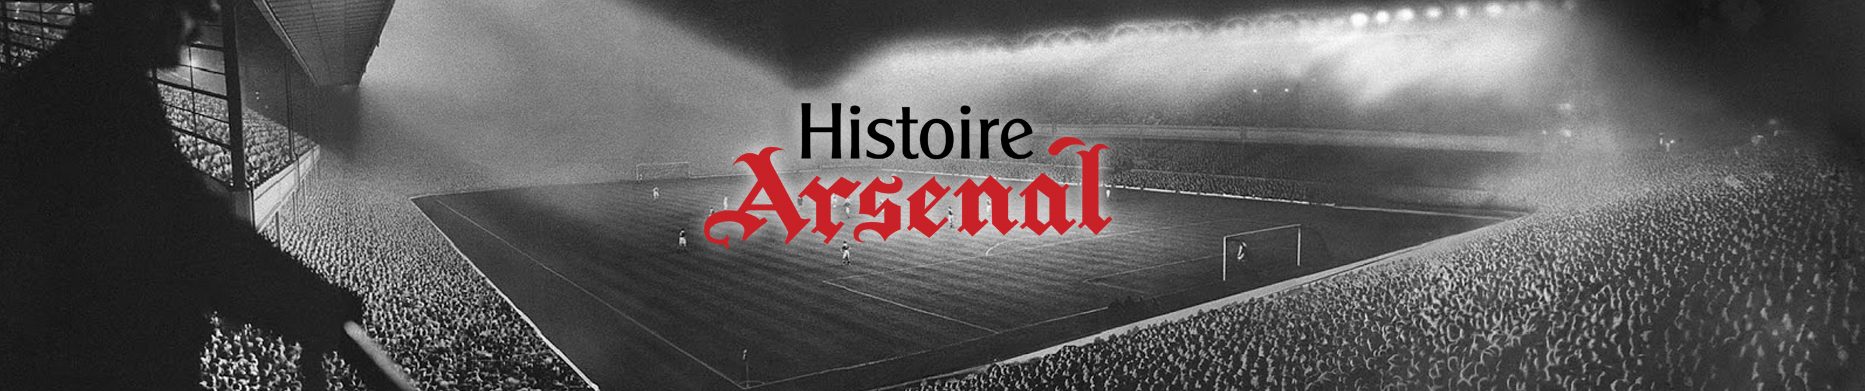 Histoire d'Arsenal Football Club